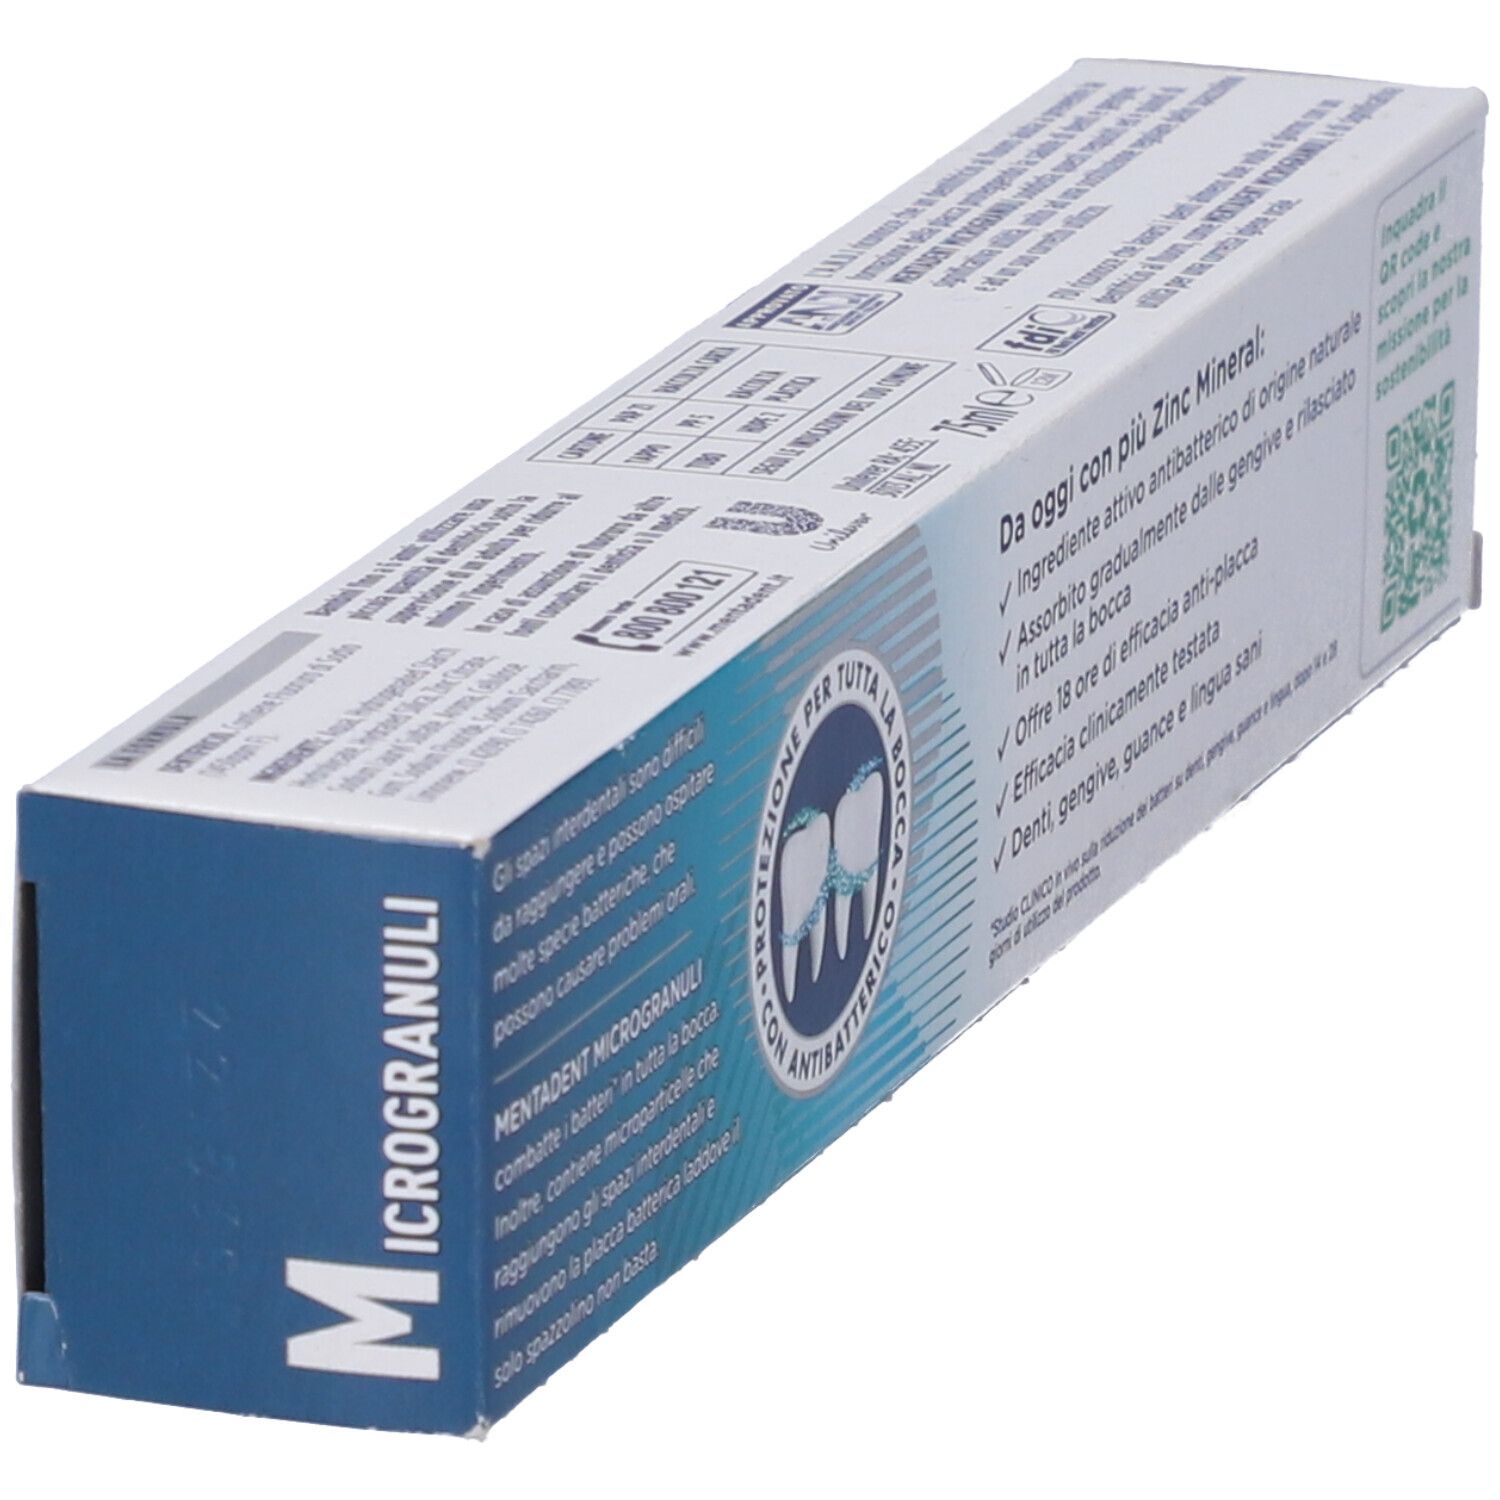 4x Mentadent Pocket Kit Portatile con Spazzolino Richiudibile e Dentifricio  Microgranuli nel Flacone da 6 ml - 4 Blister